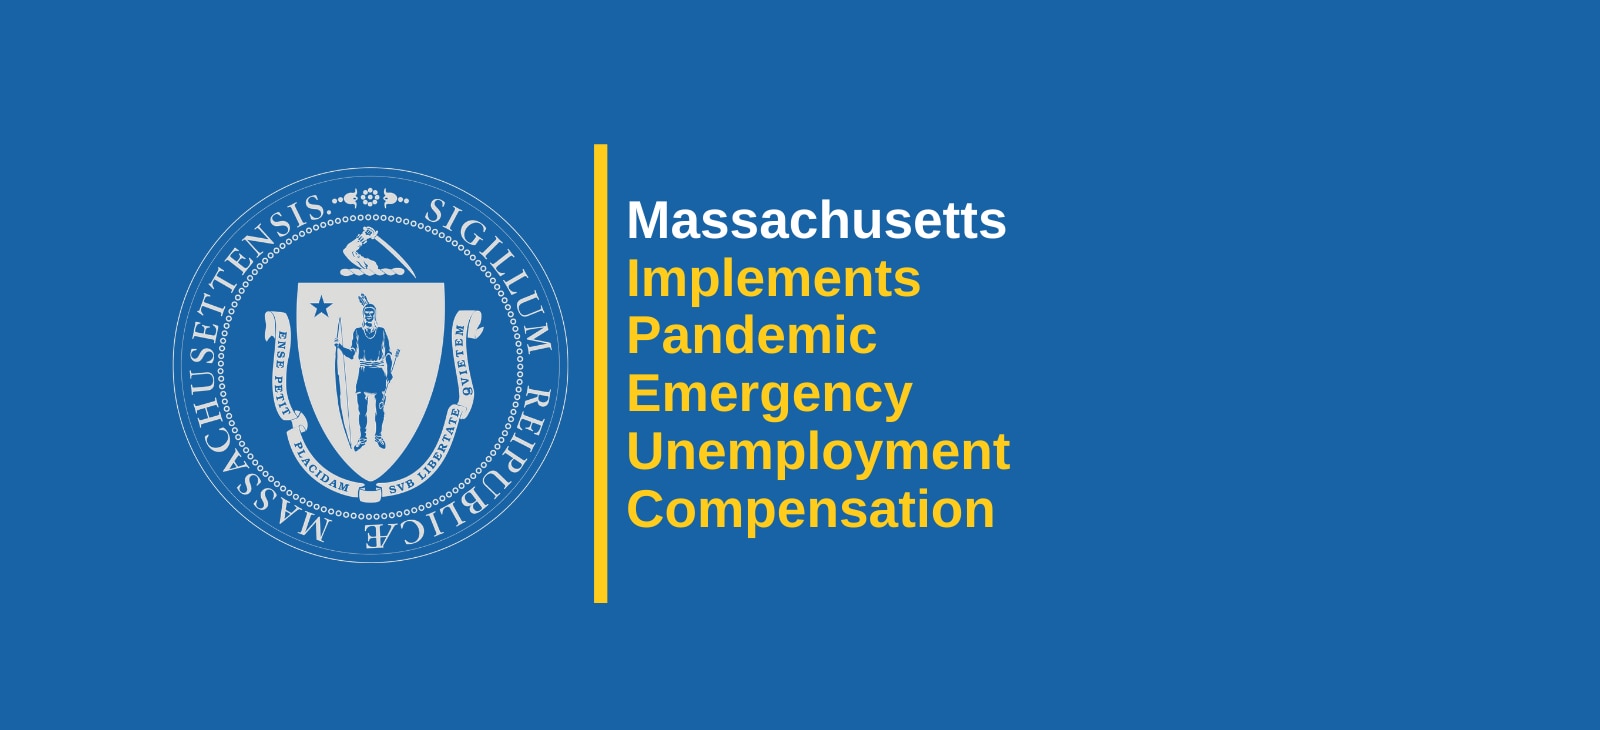 Massachusetts Implements Pandemic Emergency Unemployment Compensation (PEUC)